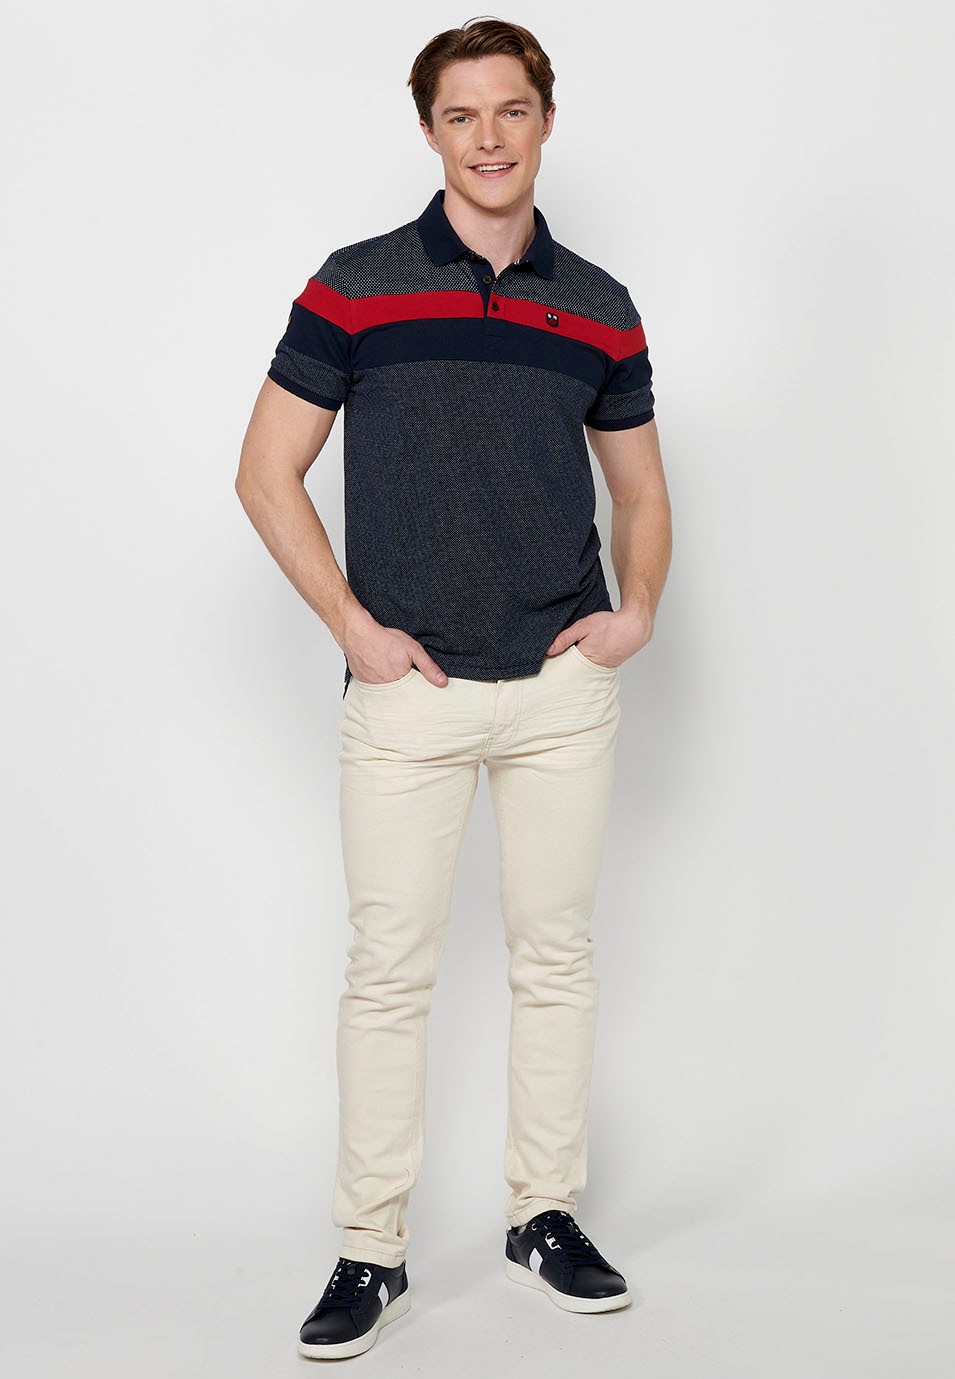 Polo à manches courtes, à rayures bicolores, noir et rouge pour homme